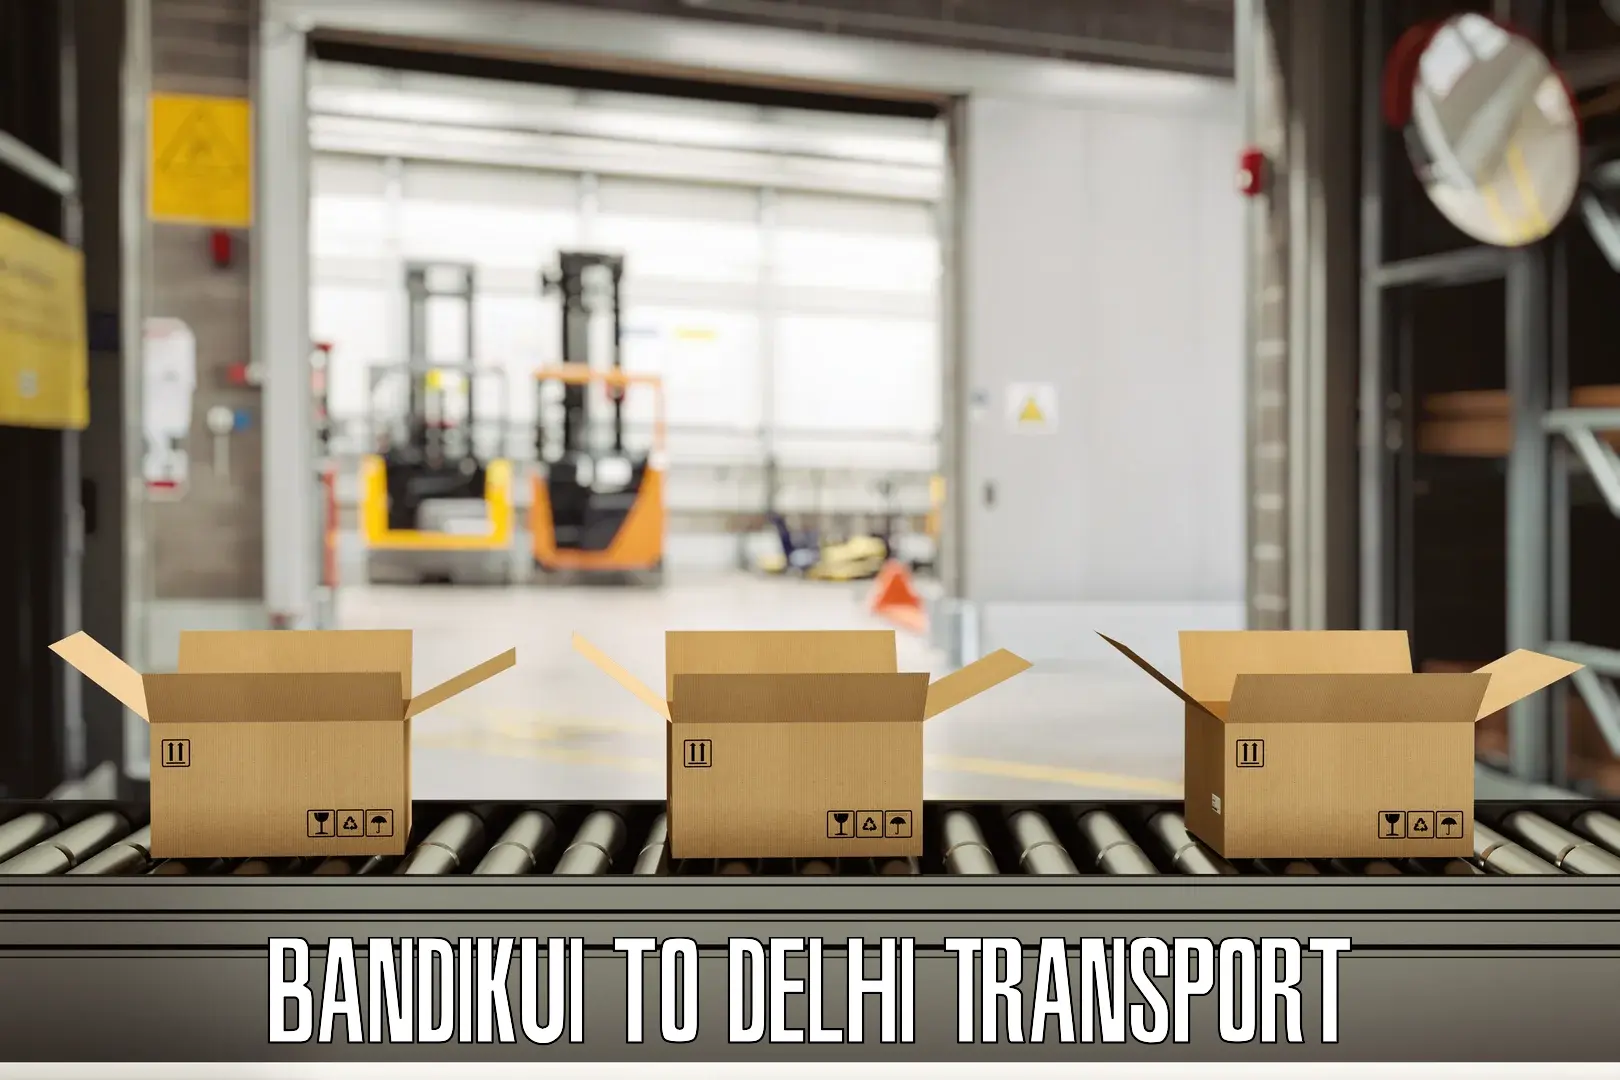 Online transport booking Bandikui to Lodhi Road